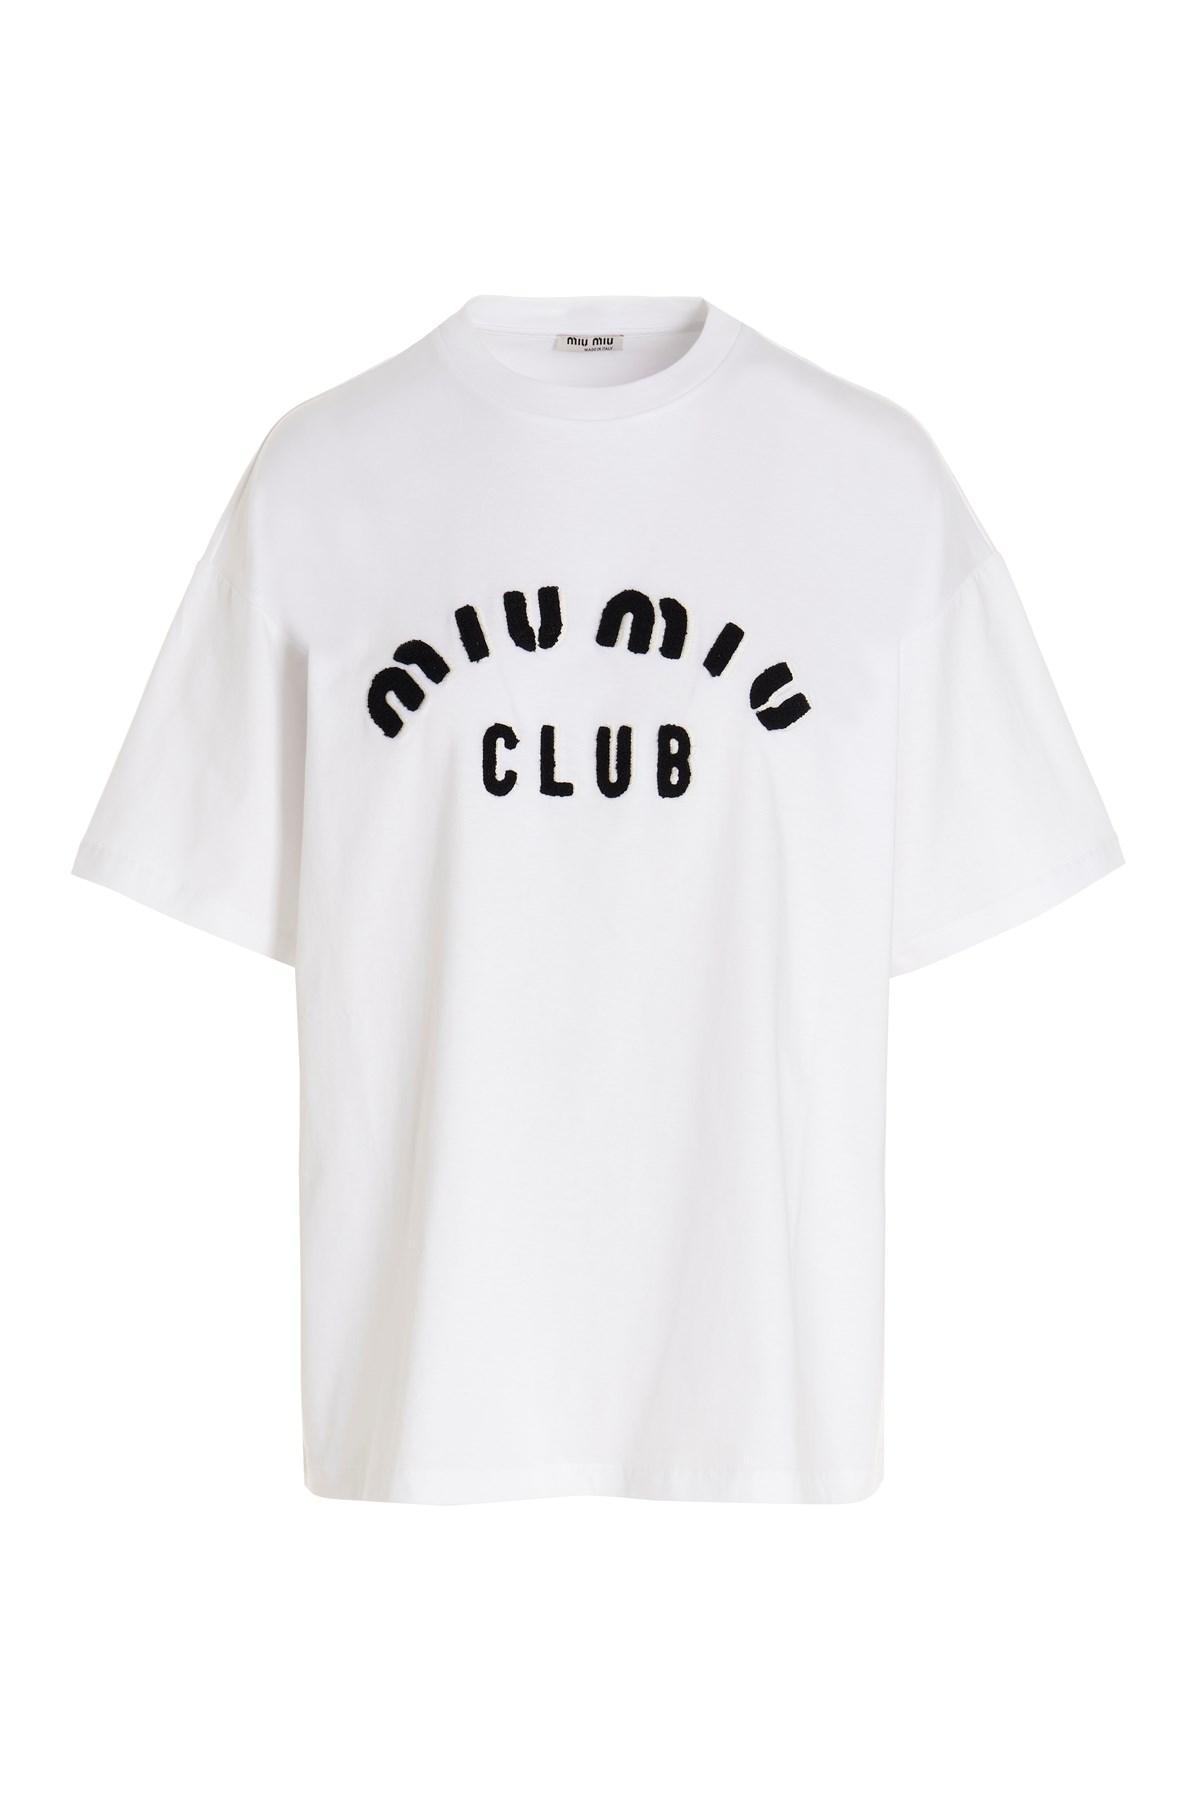 MIU MIU 'Miu Miu Club’ T-Shirt